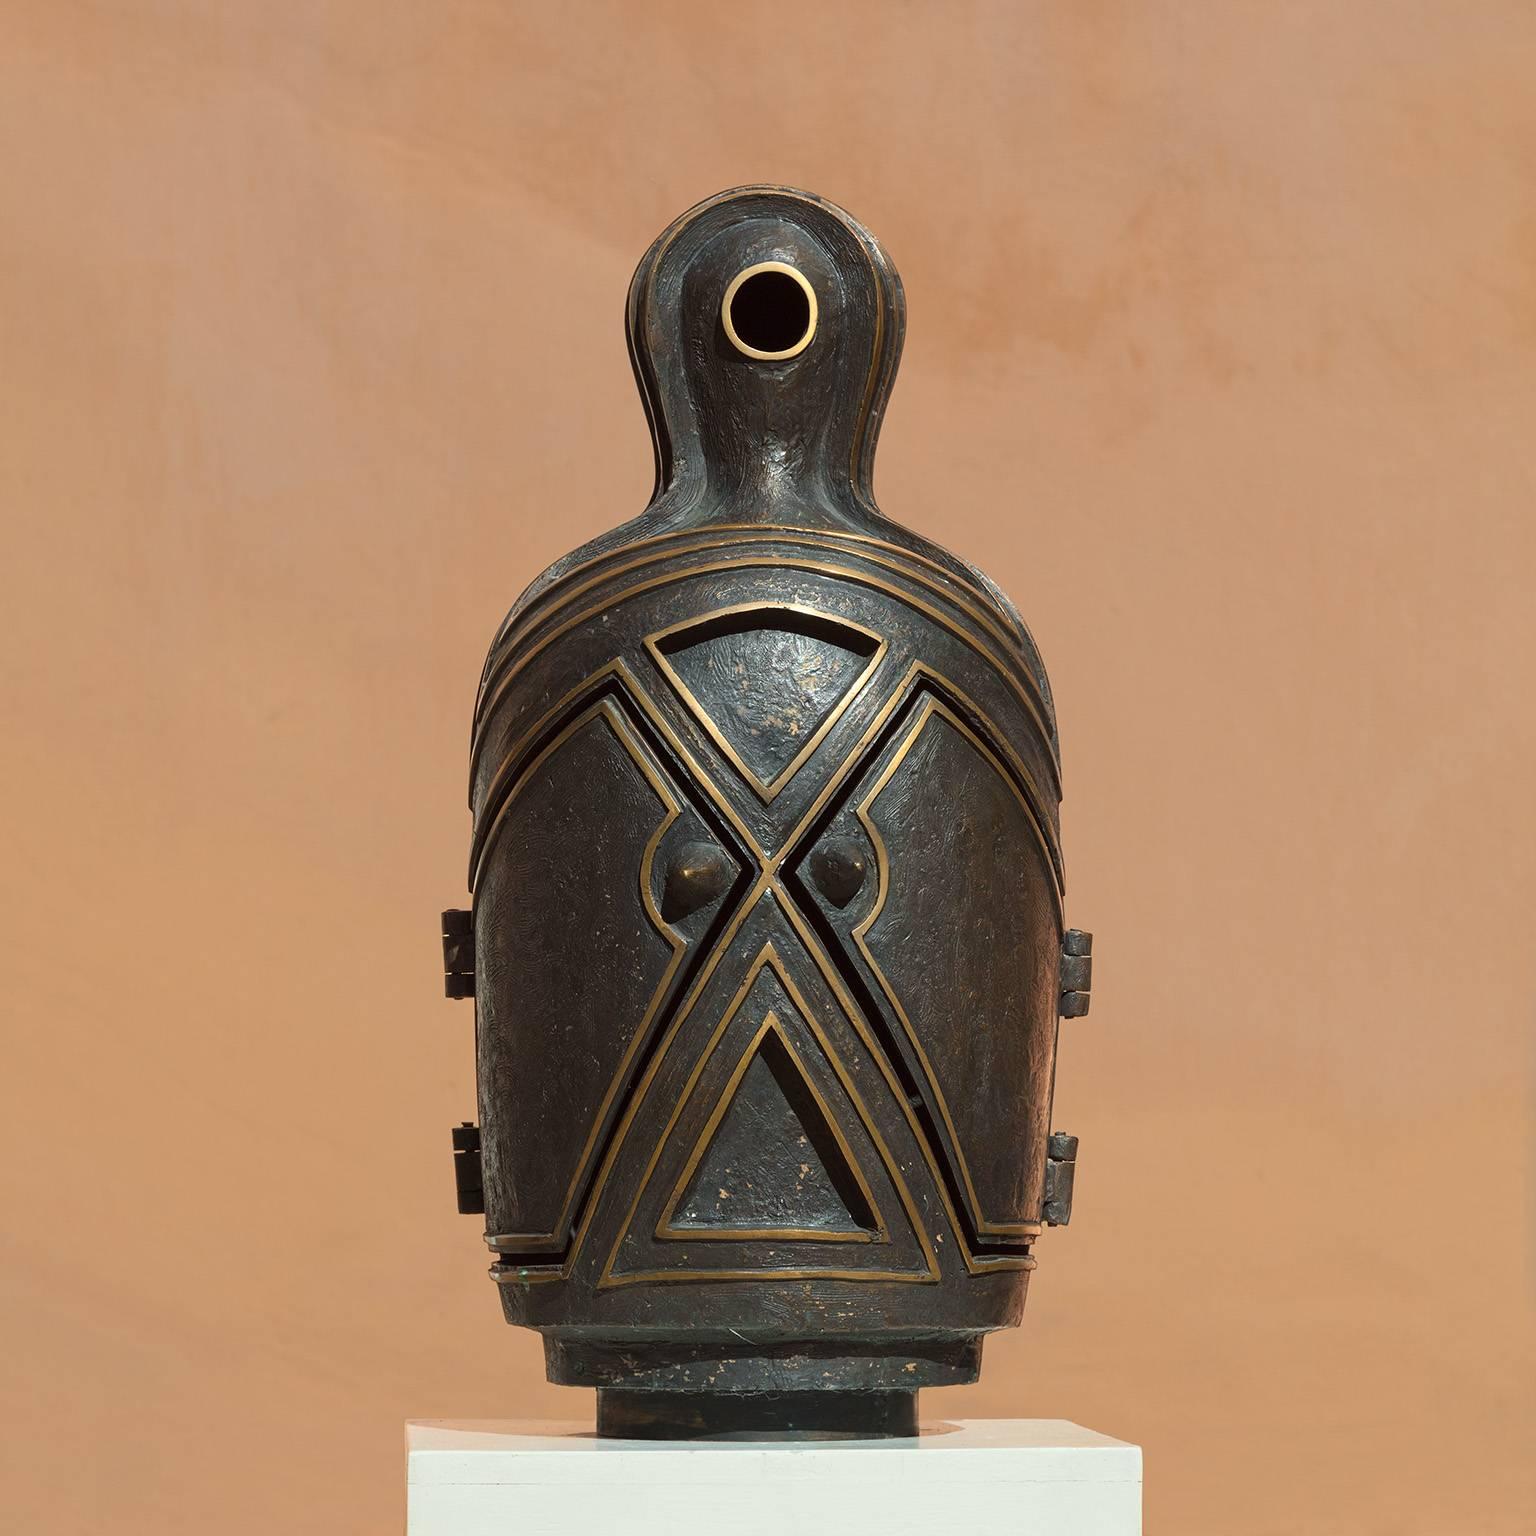 Canopo – Bronzeskulptur mit geheimen Fächern, Gedenkurne, Antropomorphe Skulptur (Gold), Figurative Sculpture, von Angelo Canevari